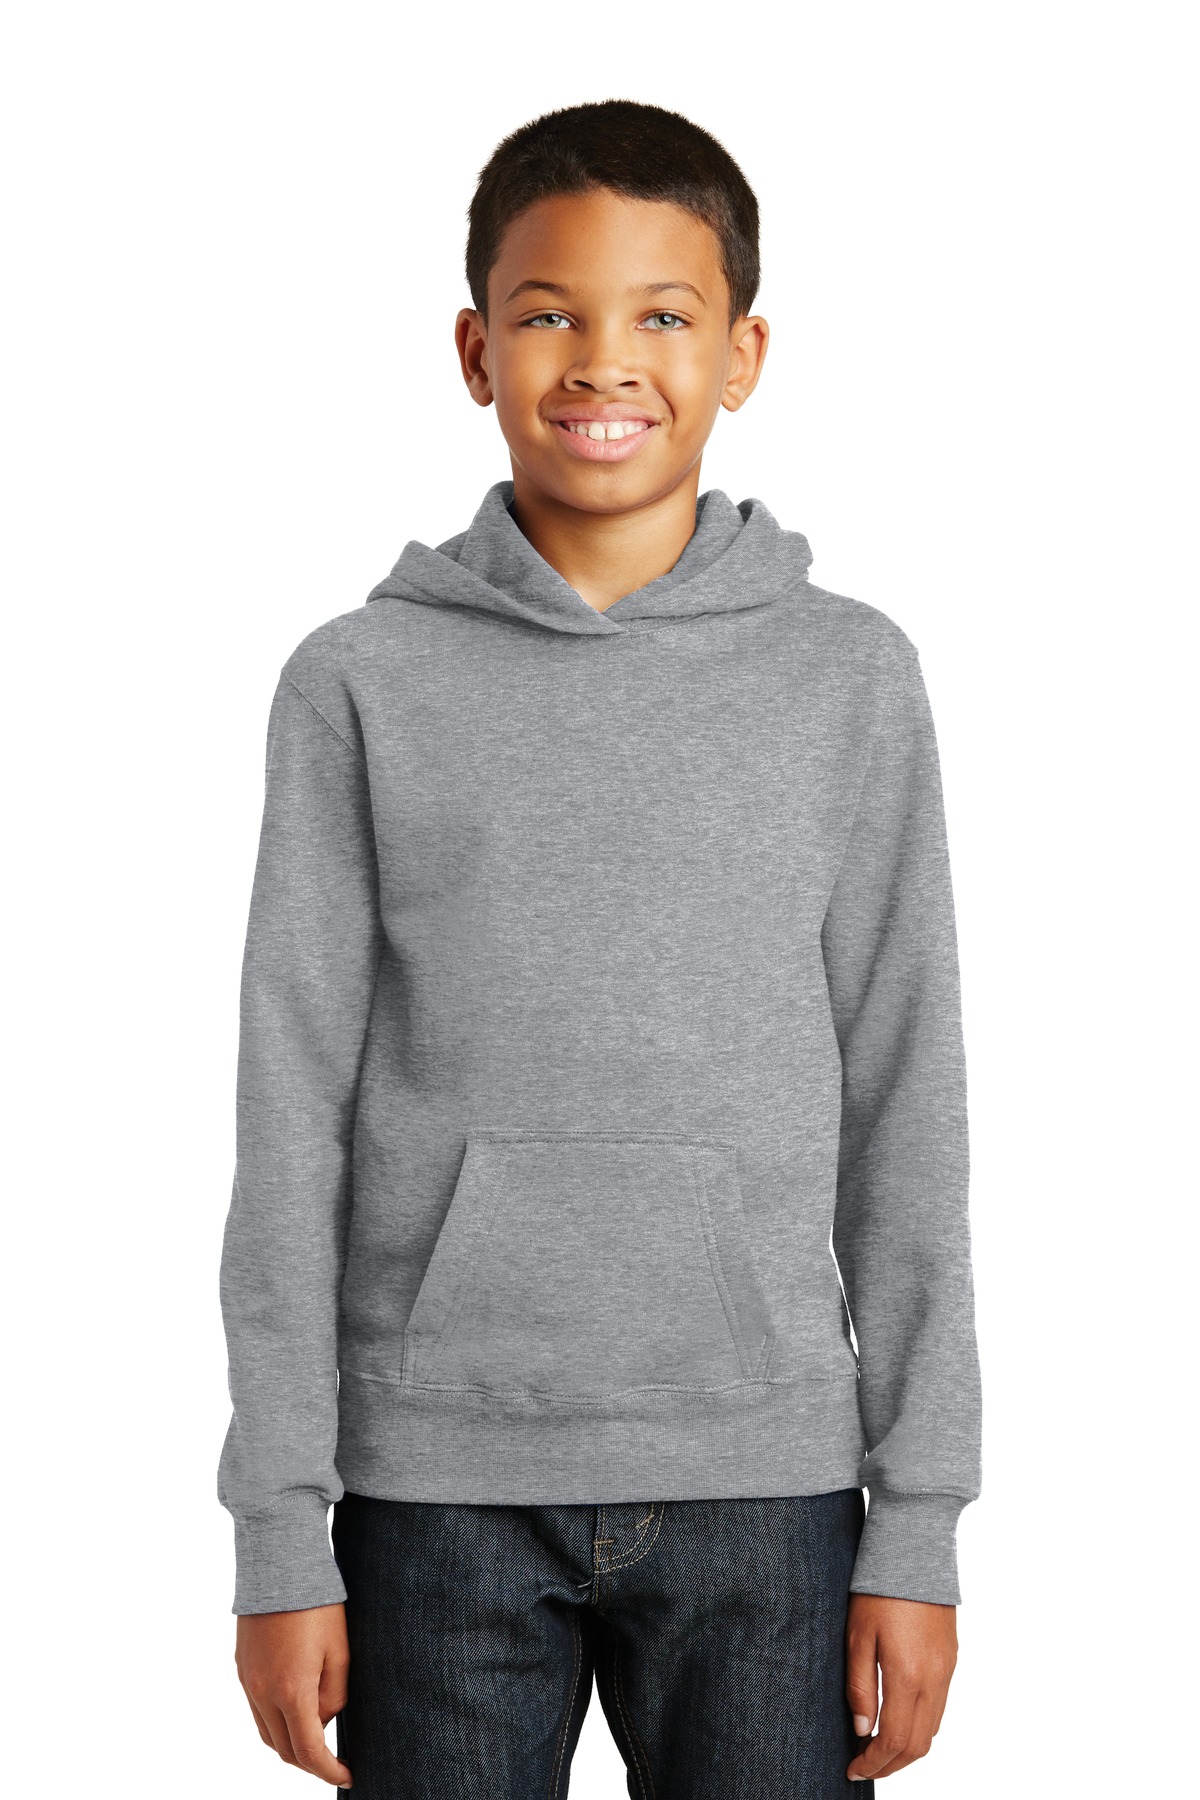 Port & Company Youth Fan Favorite Fleece Pullover Hooded Sweatshirt - PC850YH